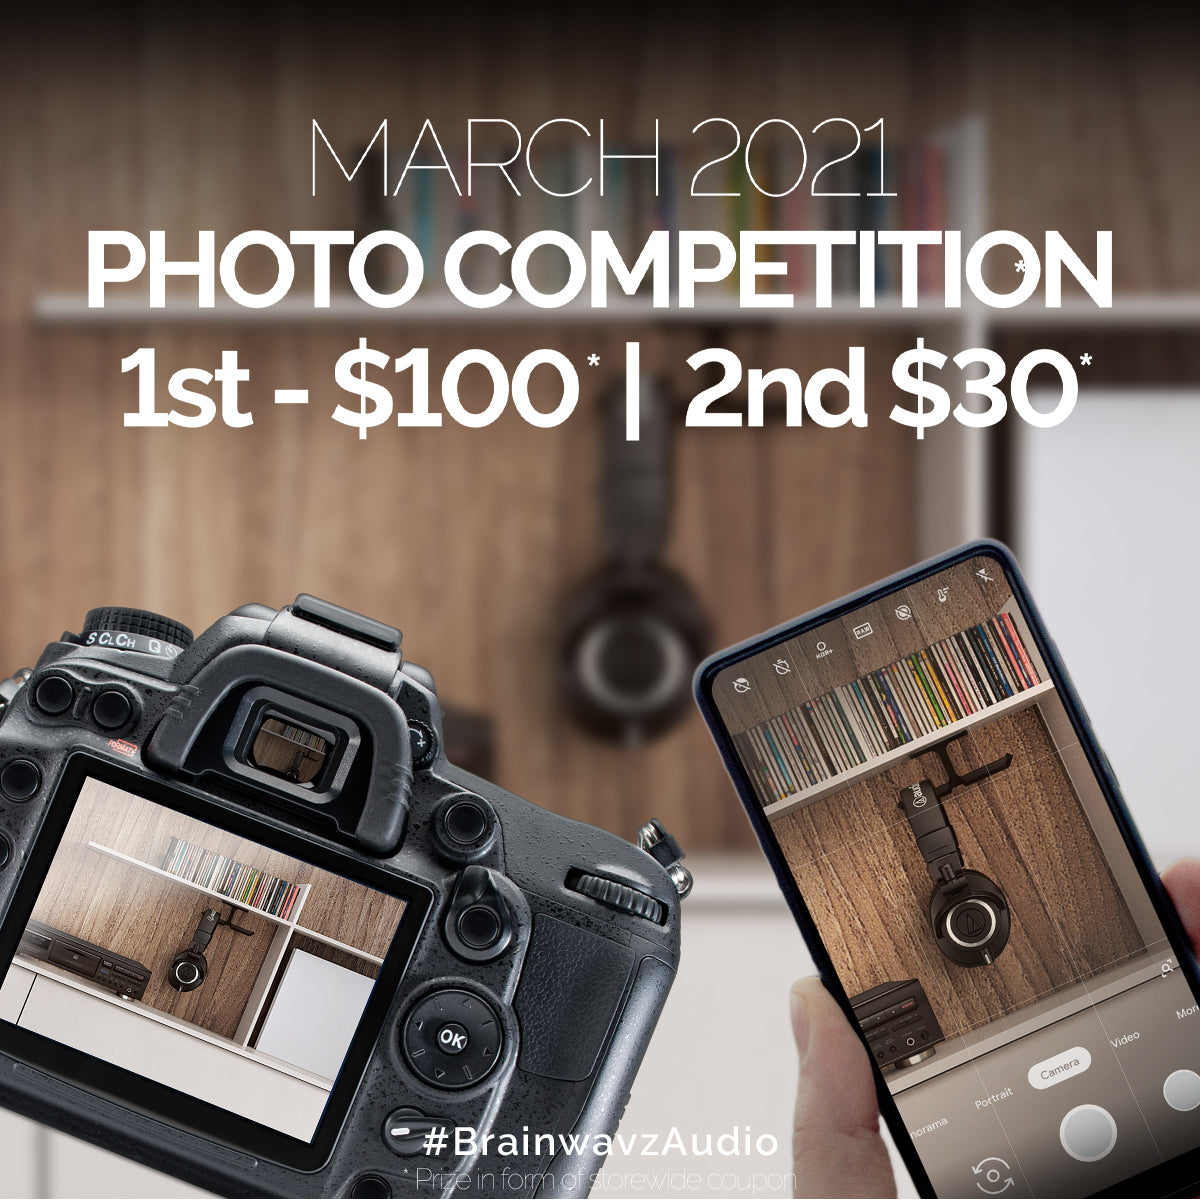 Fotowettbewerb März